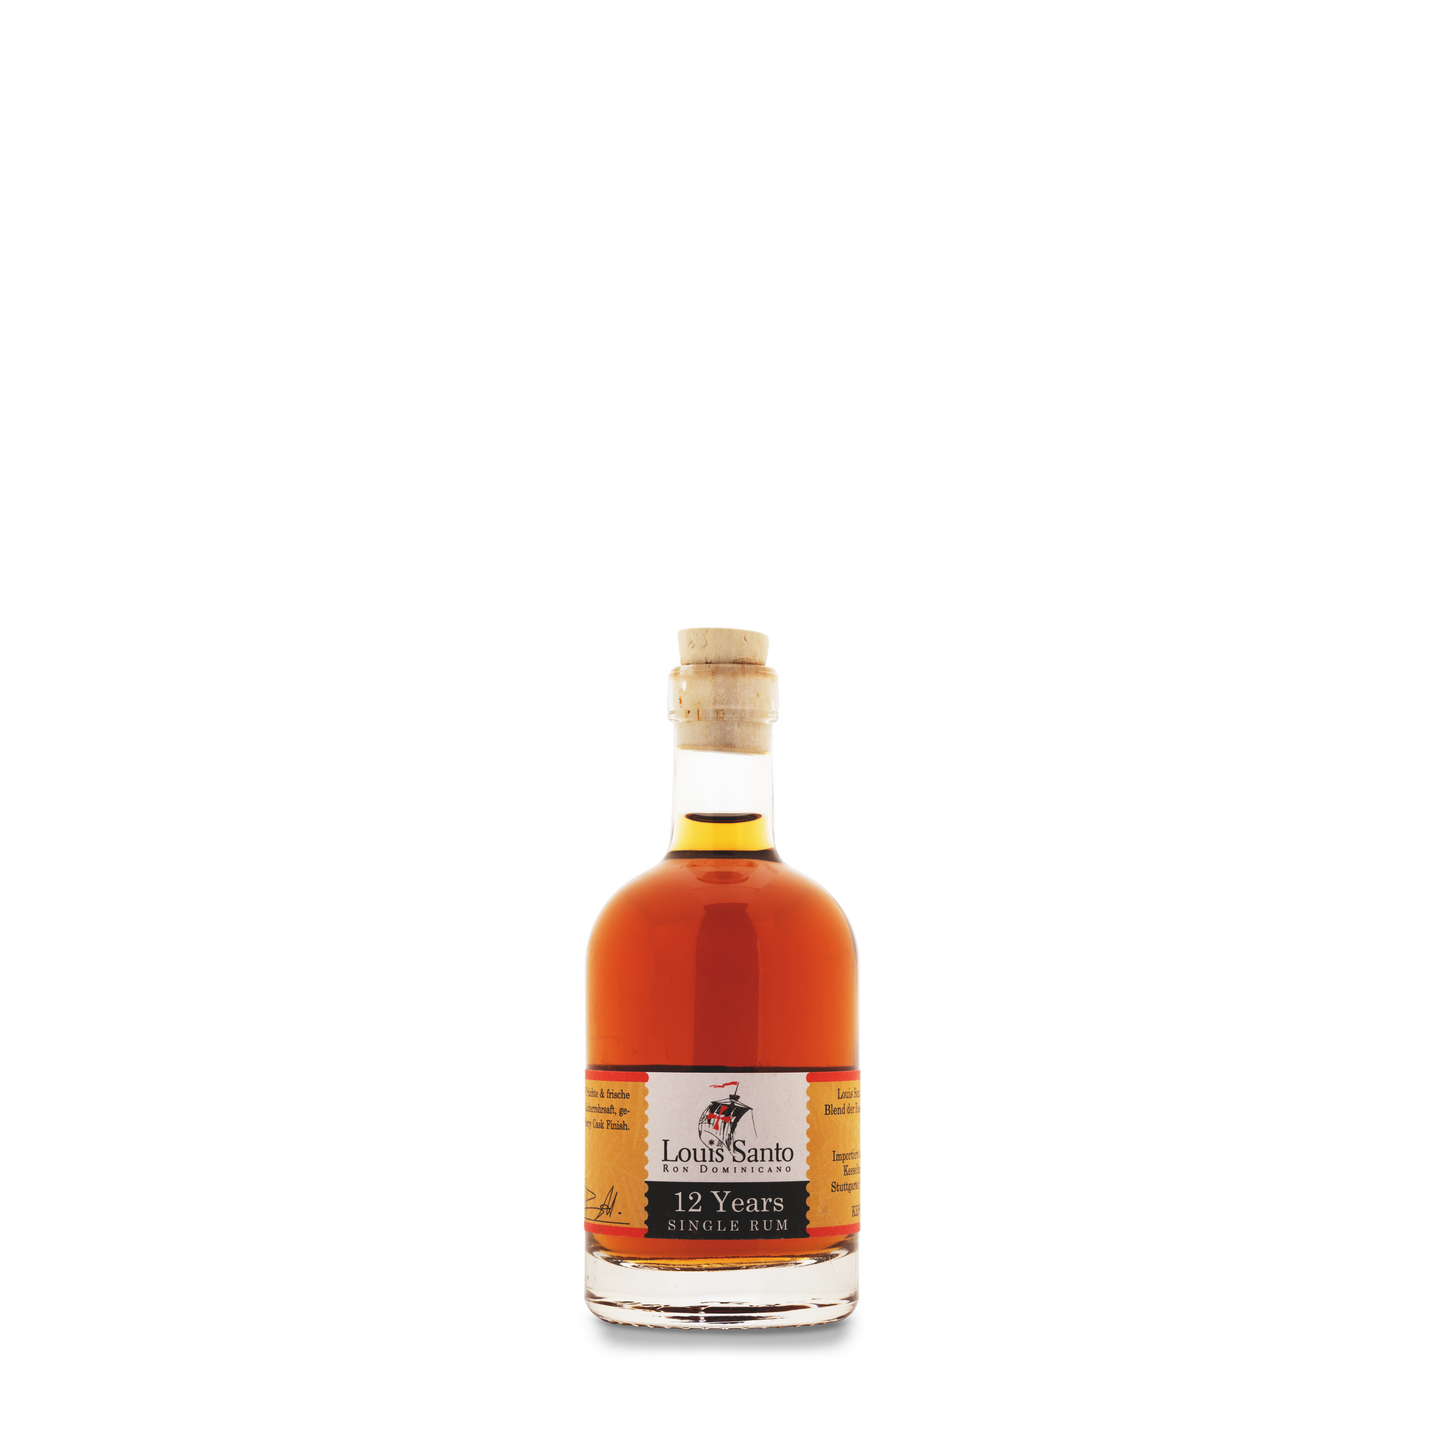 Louis Santo – Miniatur Premium Single Rum 12 Jahre